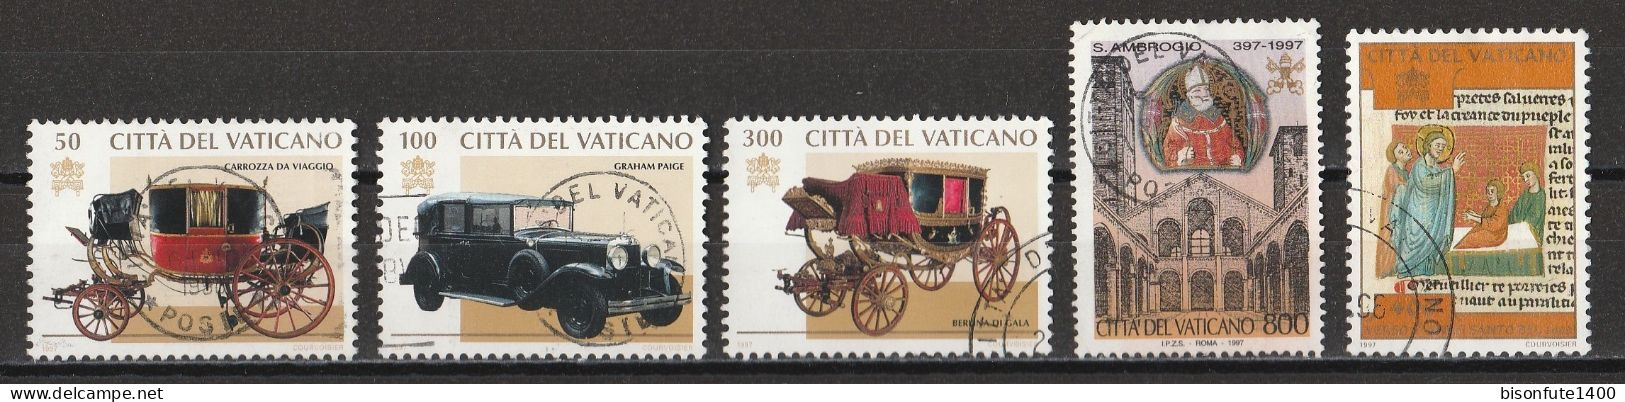 Vatican 1997 : Timbres Yvert & Tellier N° 1059 - 1060 - 1061 - 1083 - 1084 - 1089 - 1090 - 1091 - 1092 Et 1093 Oblitérés - Gebruikt